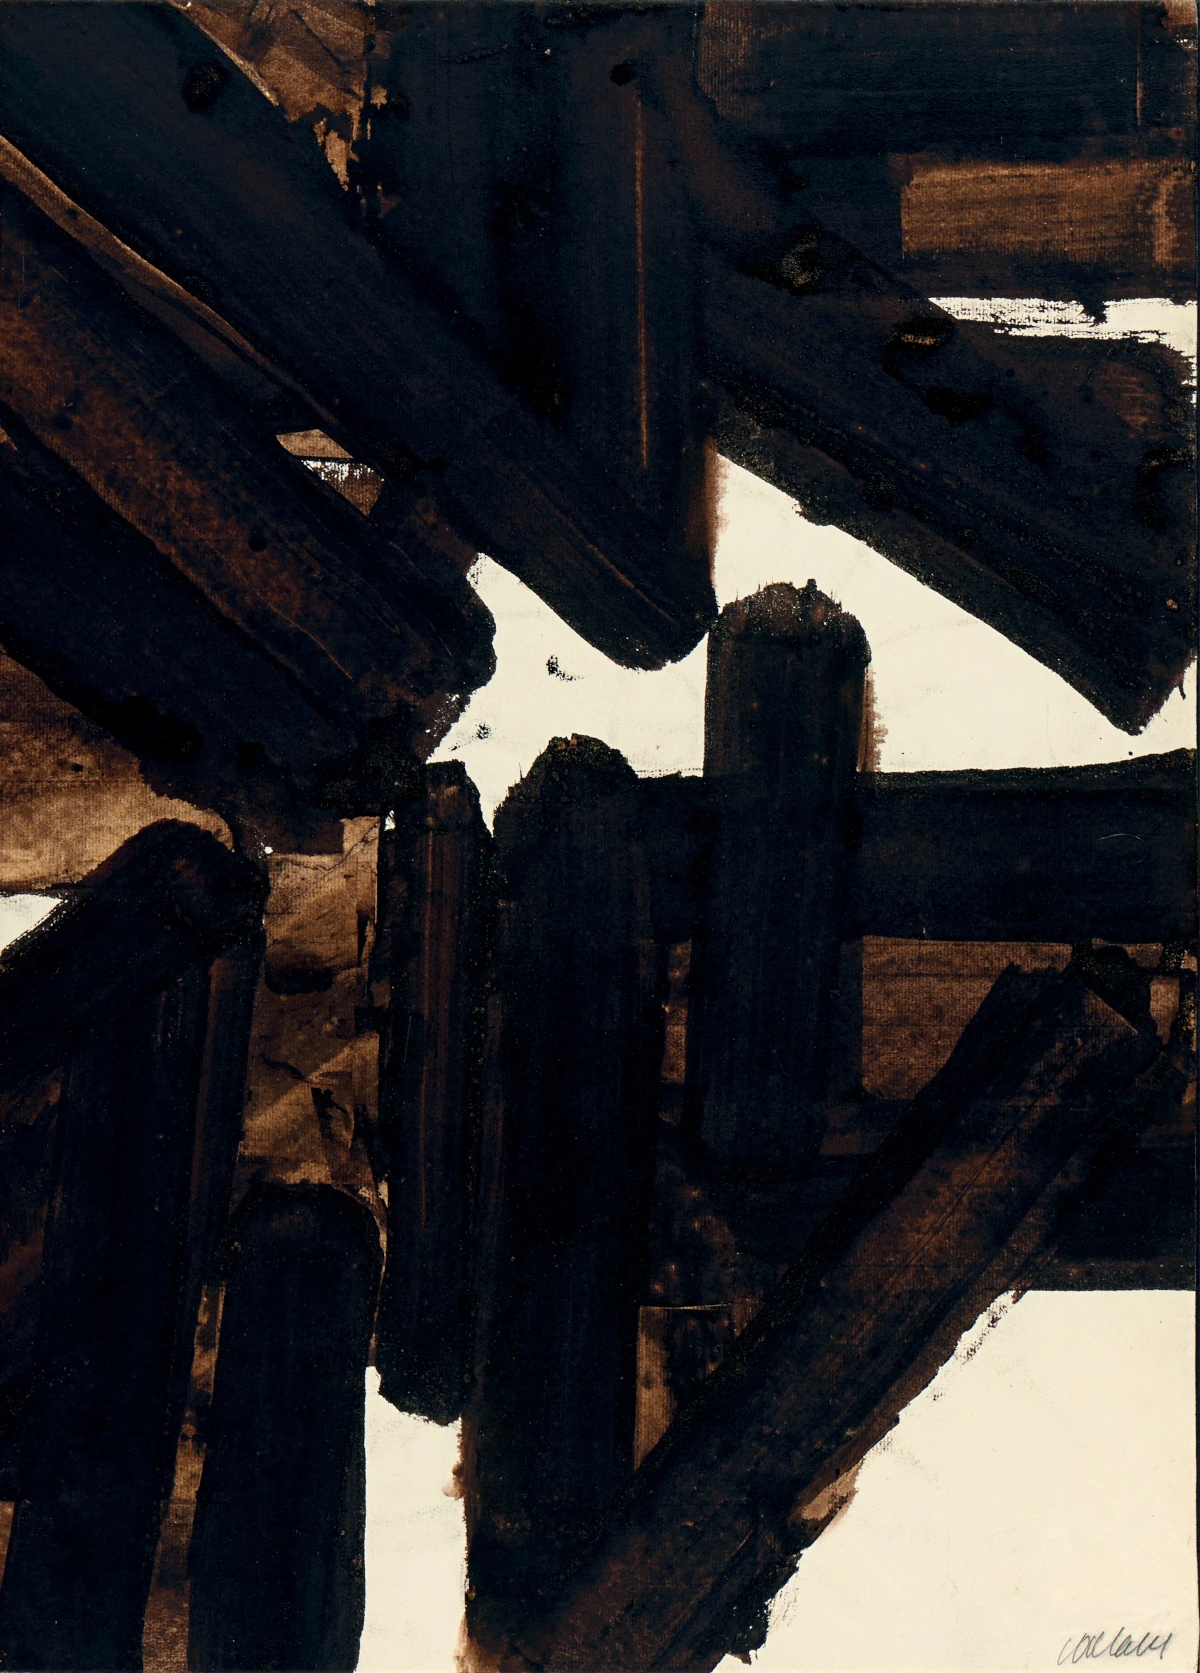 Un tableau de Pierre Soulages représentant des bandes marron foncé et noires au brou de noix, sur fond blanc cassé